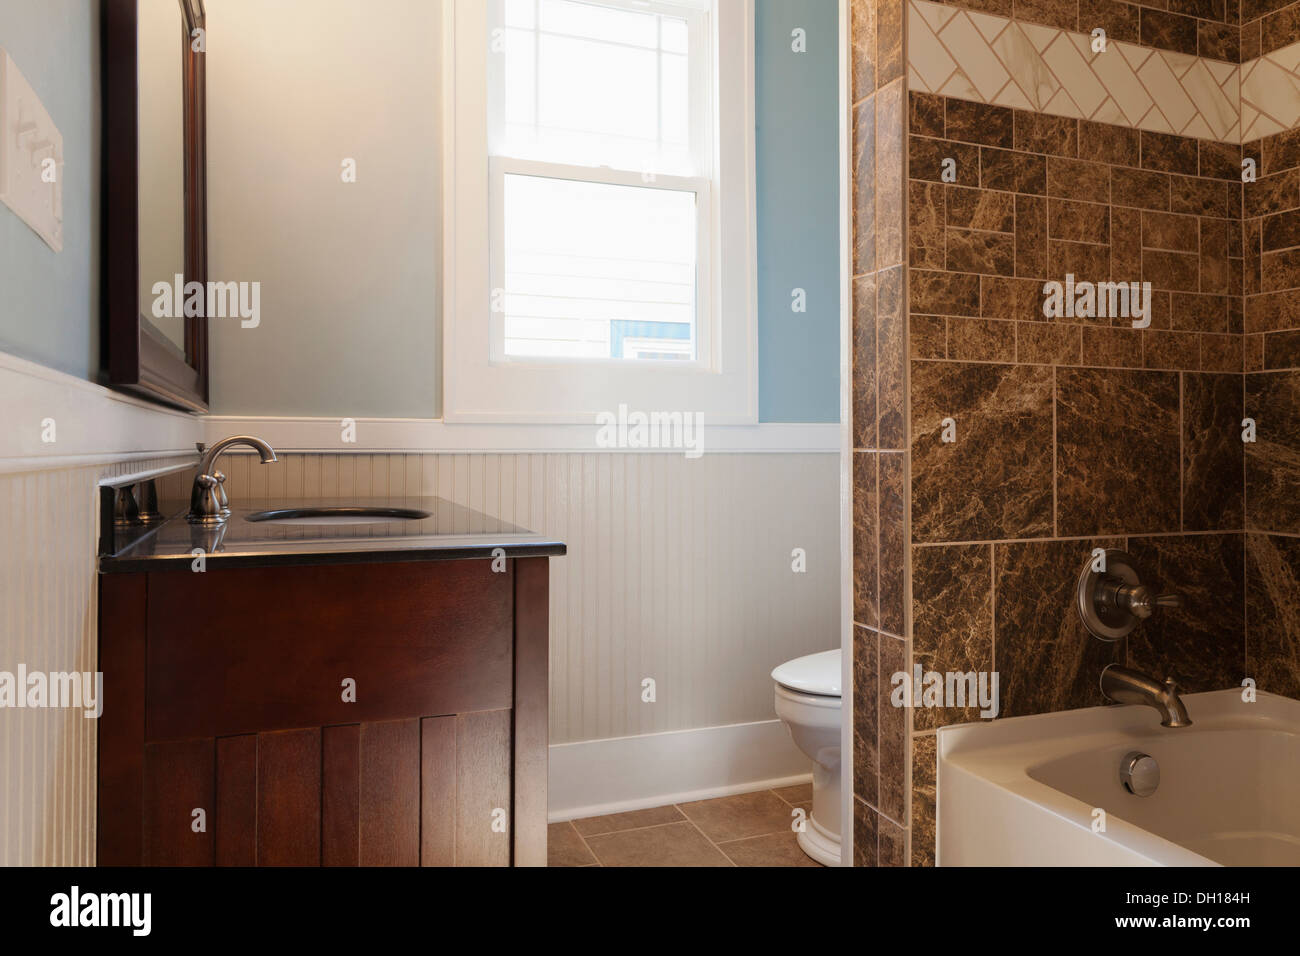 Waschbecken, Badewanne und Toilette im Badezimmer Stockfoto